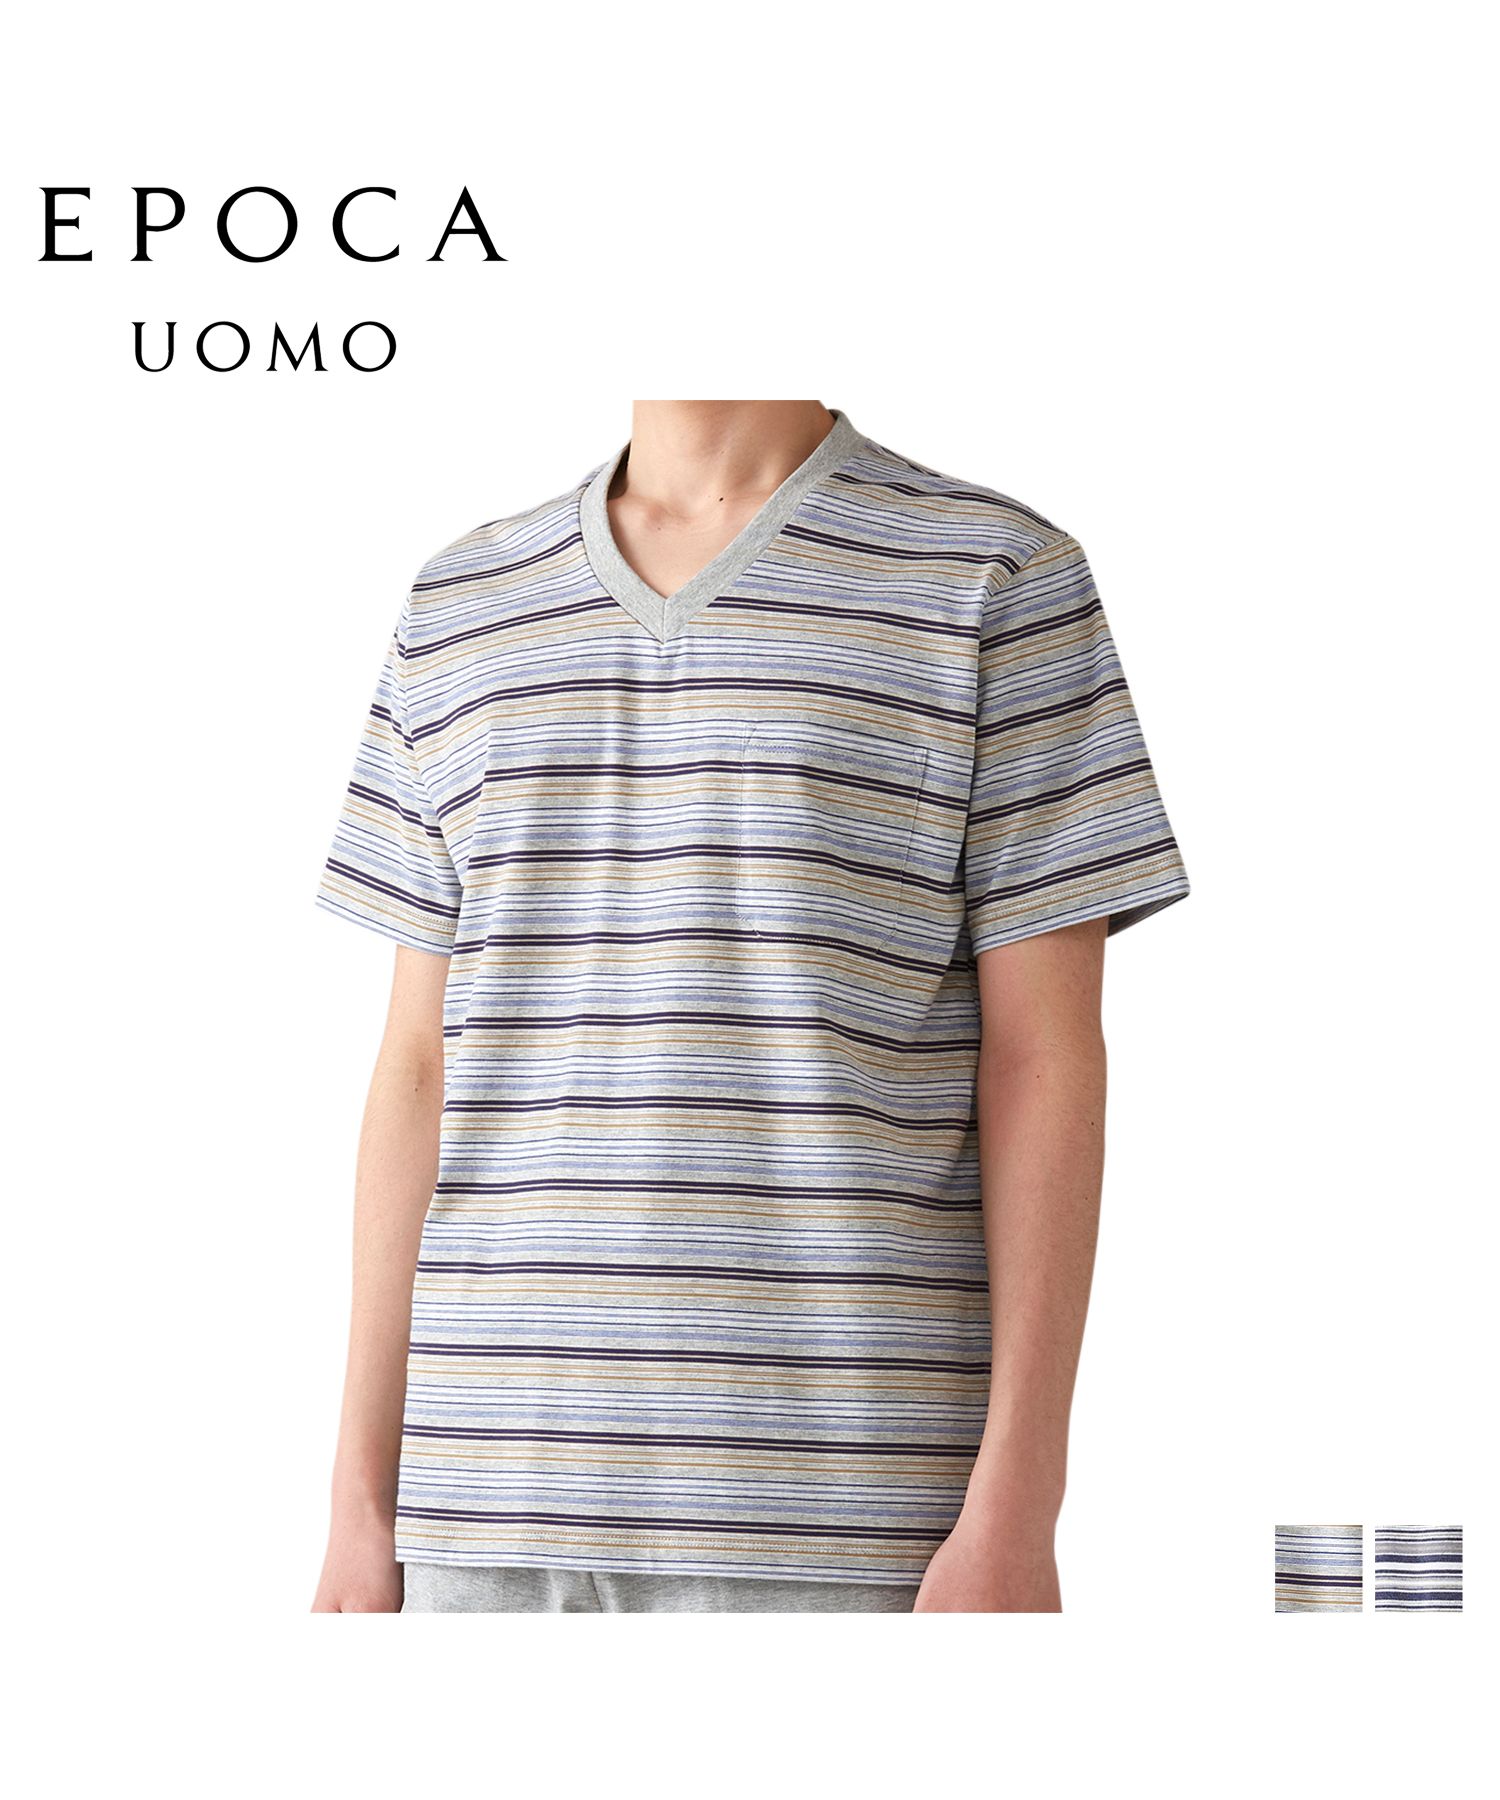 エポカ ウォモ EPOCA UOMO Tシャツ 半袖 カットソー メンズ Vネック ボーダー グレー ネイビー 0385－37